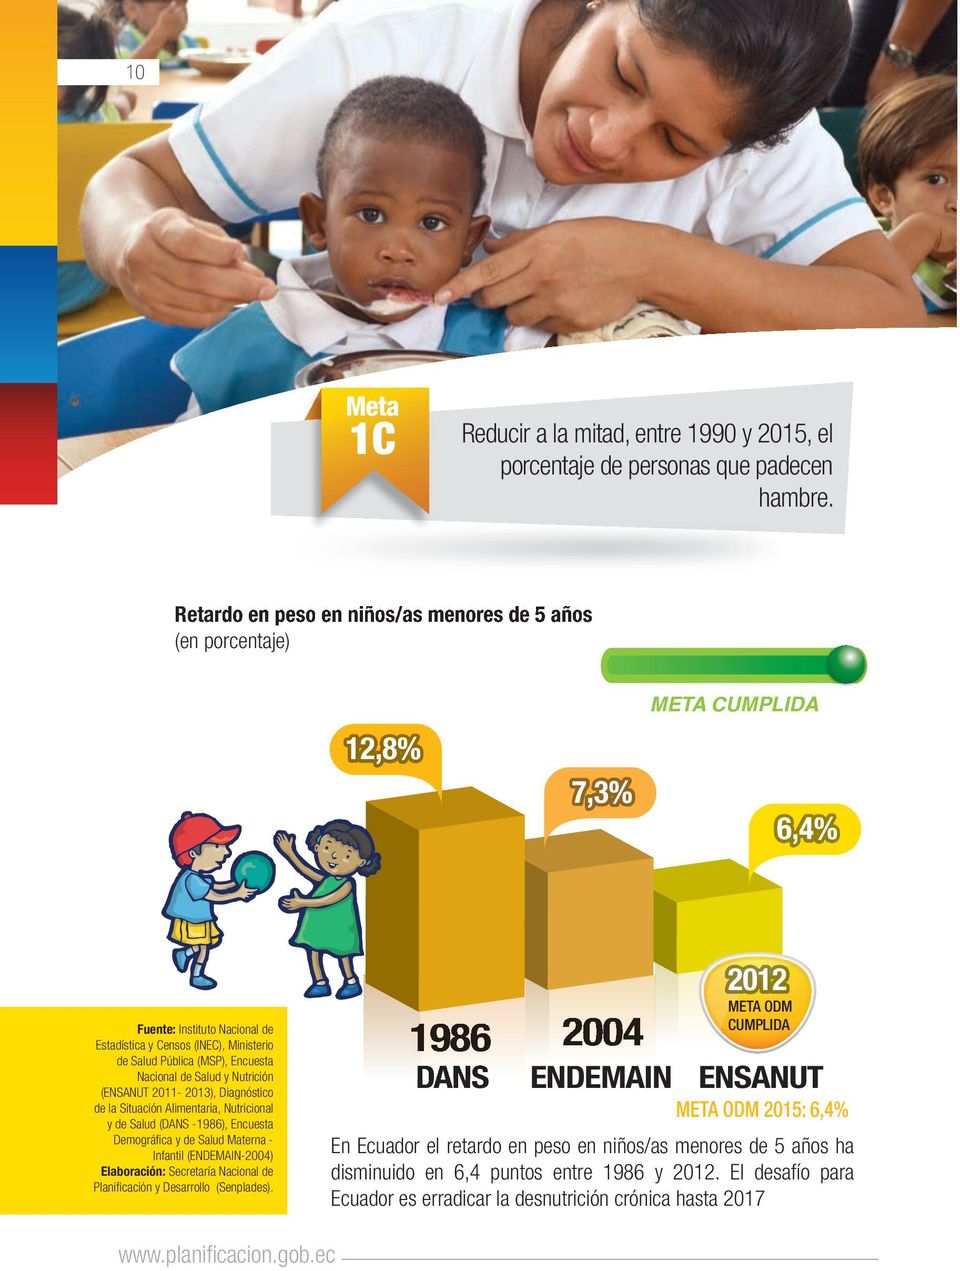 Nacional de Salud y Nutrición (ENSANUT 2011-2013), Diagnóstico de la Situación Alimentaria, Nutricional y de Salud (DANS -1986), Encuesta Demográfica y de Salud Materna - Infantil (ENDEMAIN-2004)